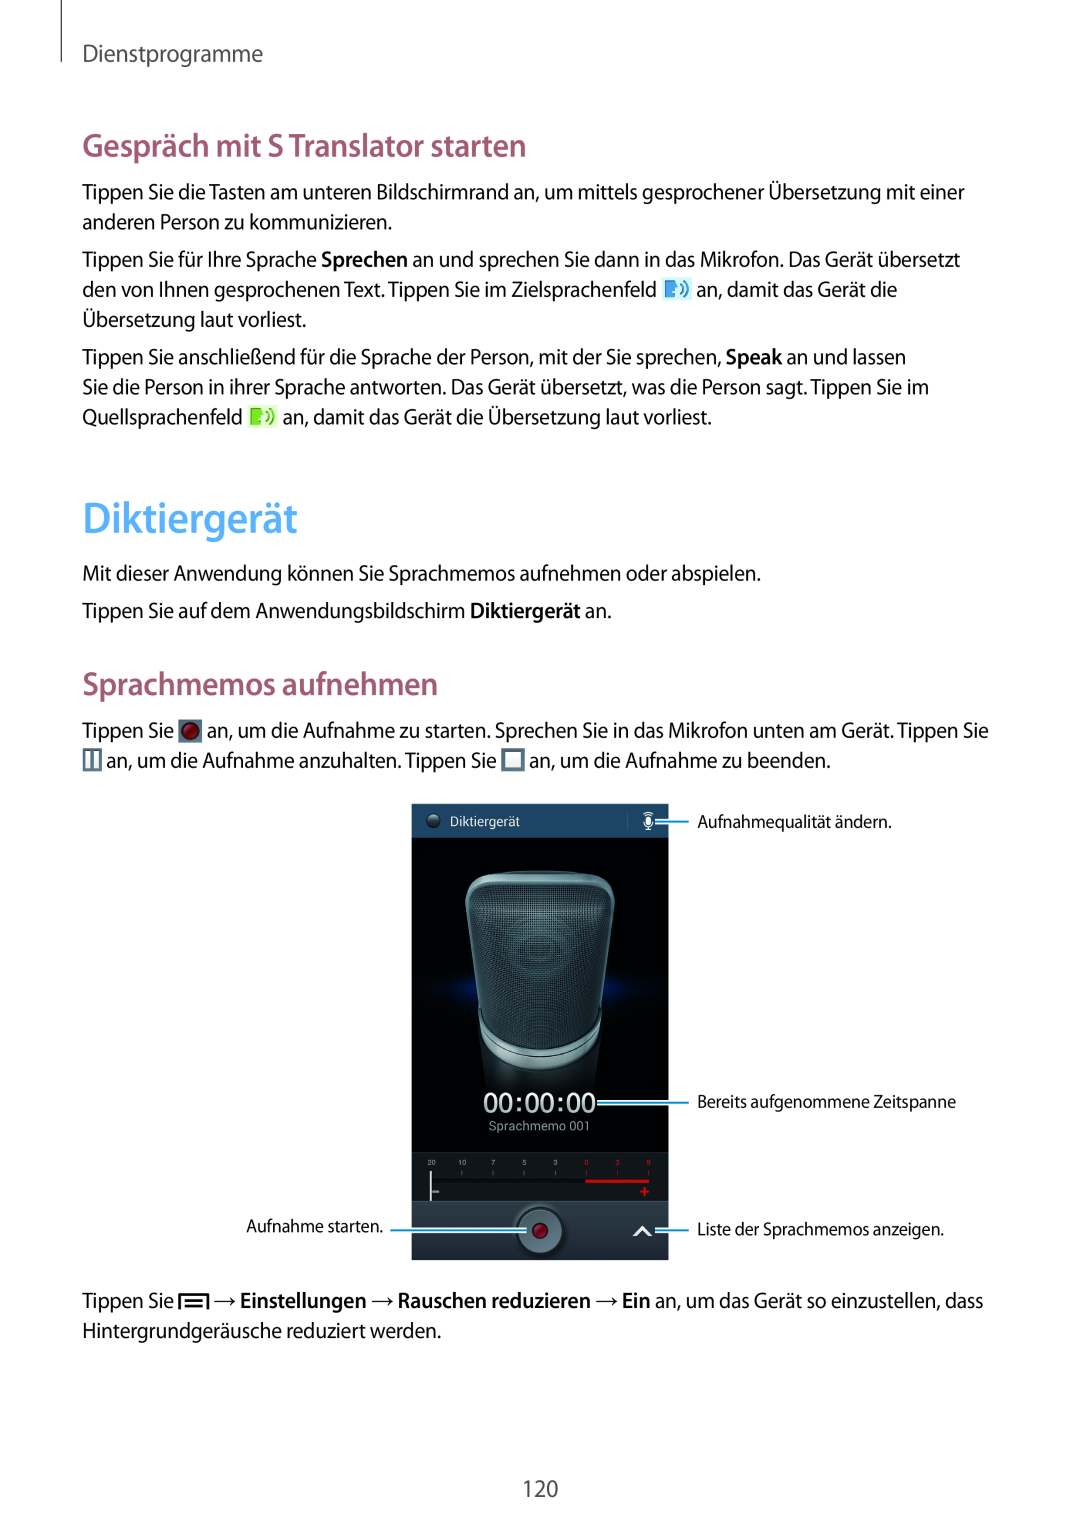 Samsung GT-I9505ZWAXEF manual Diktiergerät, Gespräch mit S Translator starten, Sprachmemos aufnehmen, Dienstprogramme 